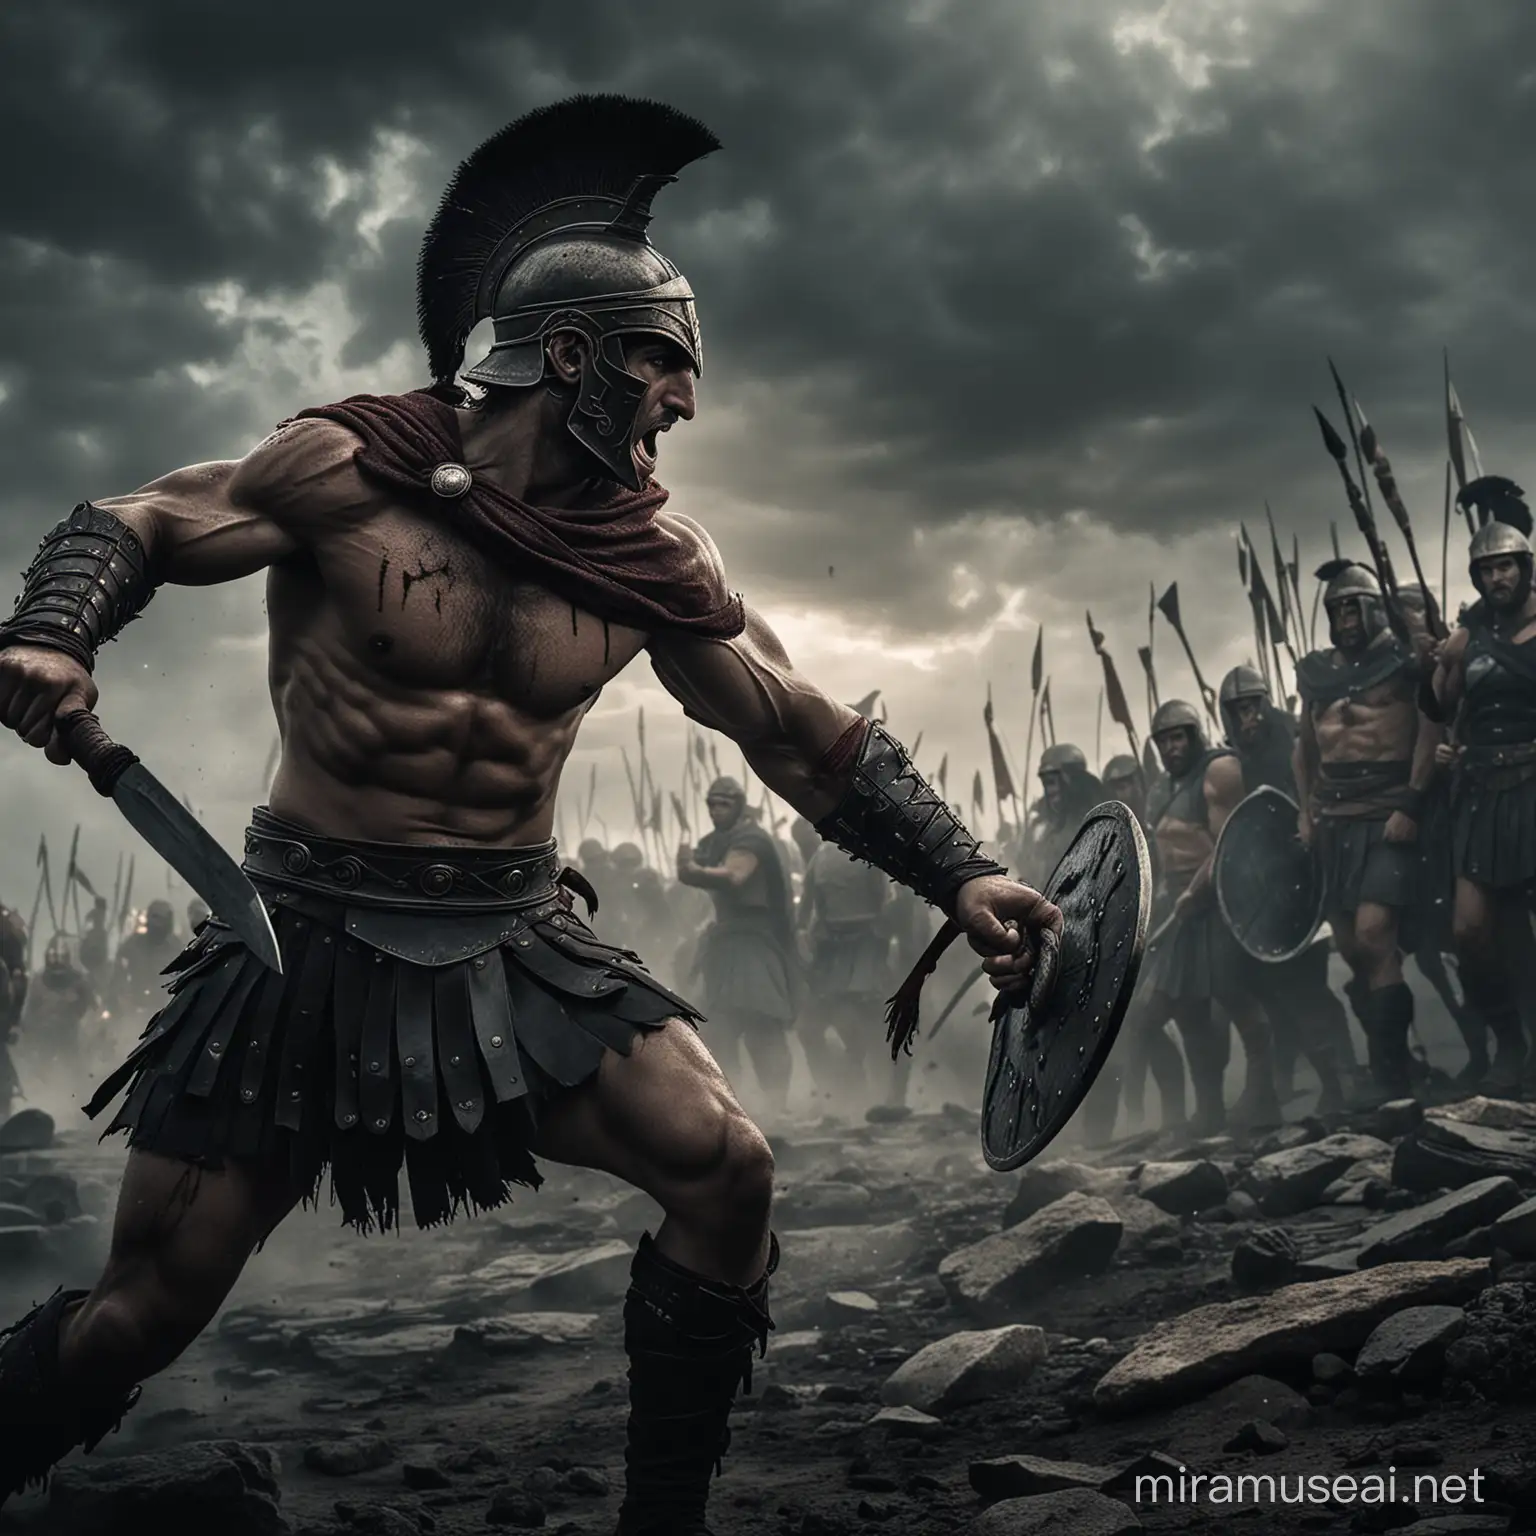 Epic Greek Warrior Battles in the Darkness